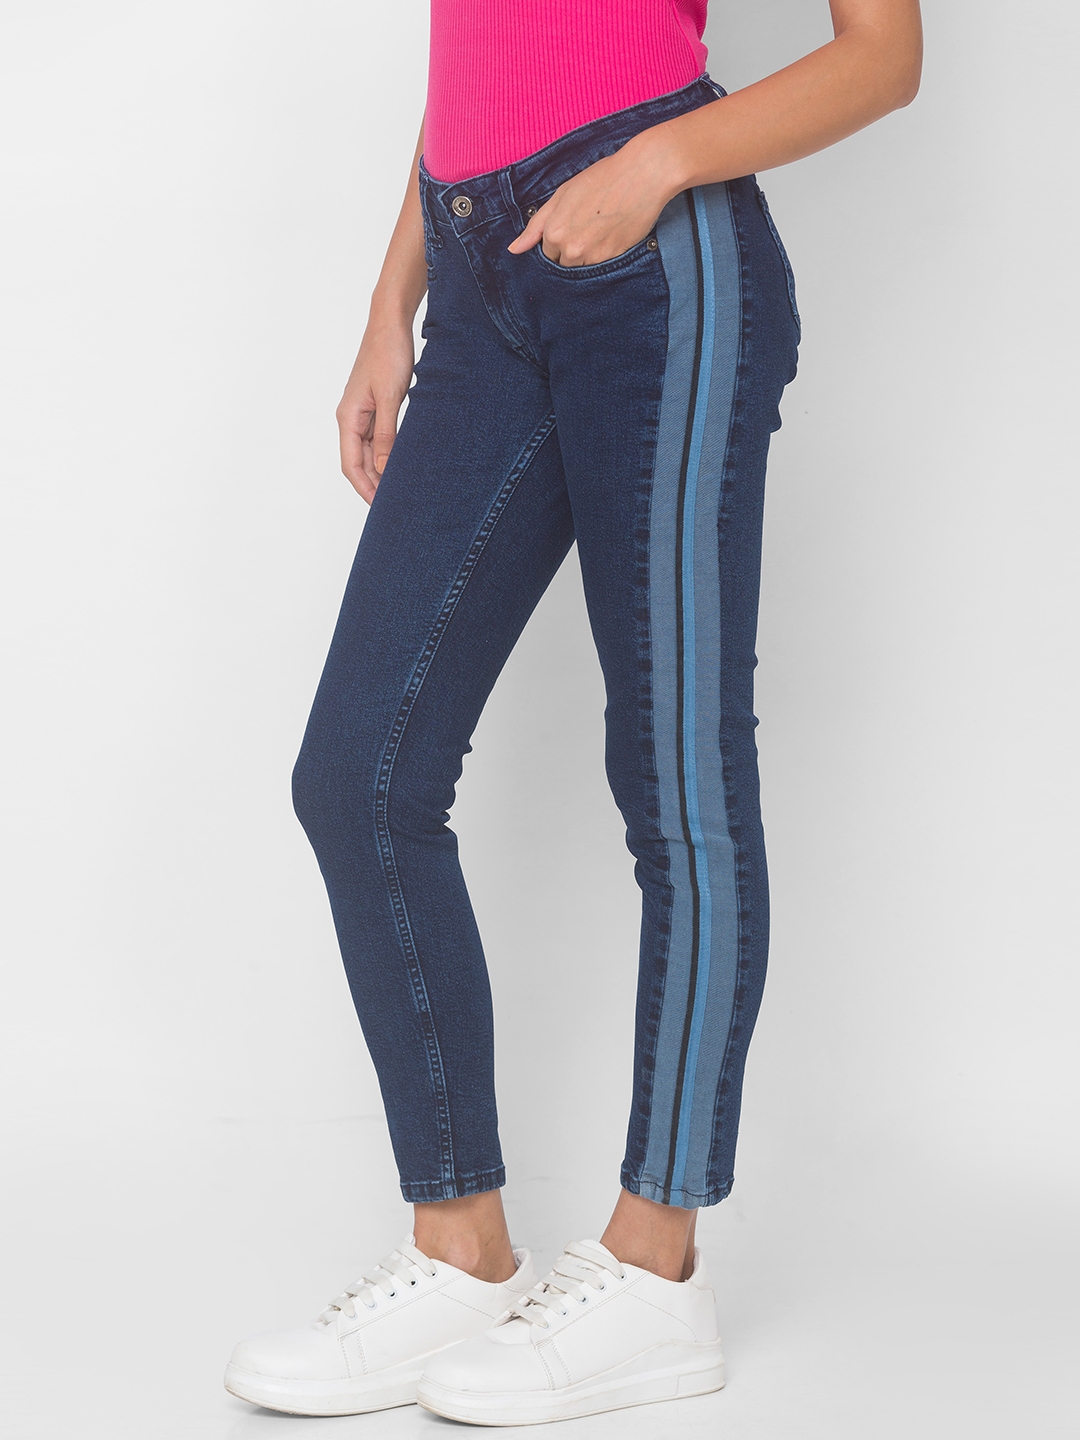 globus | Women's Blue Cotton Solid Slim Jeans 3